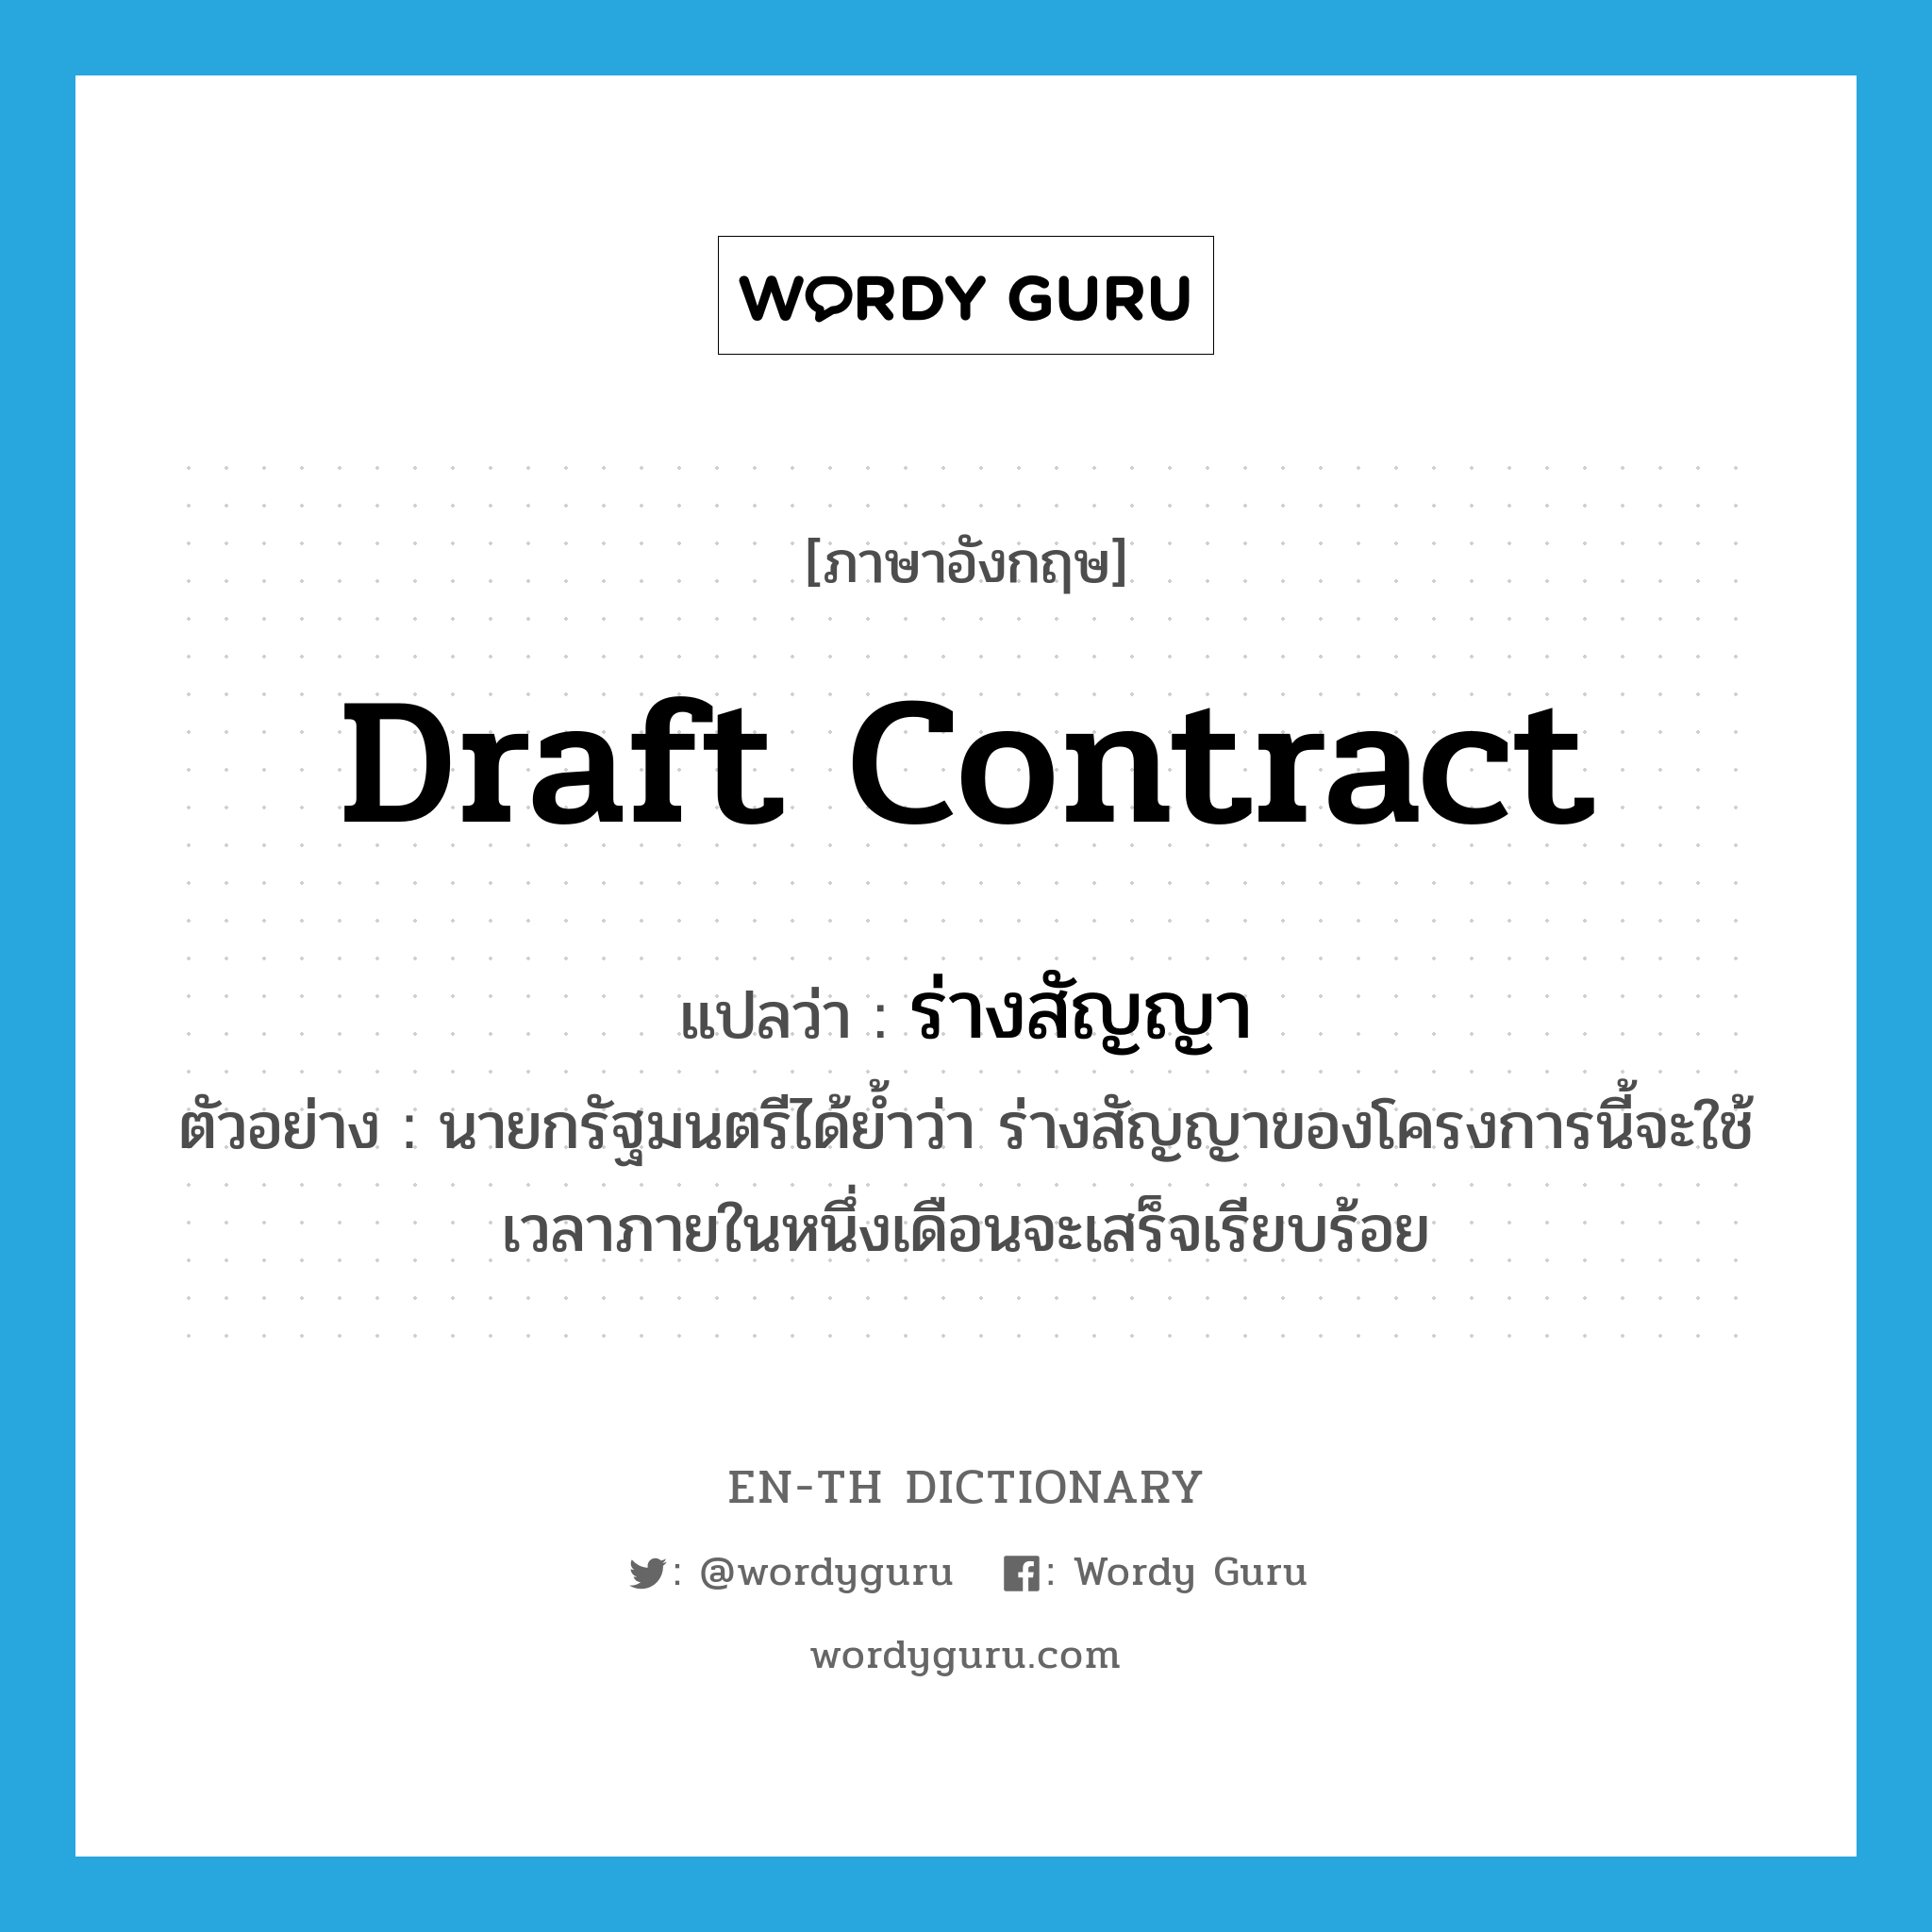 draft contract แปลว่า?, คำศัพท์ภาษาอังกฤษ draft contract แปลว่า ร่างสัญญา ประเภท N ตัวอย่าง นายกรัฐมนตรีได้ย้ำว่า ร่างสัญญาของโครงการนี้จะใช้เวลาภายในหนึ่งเดือนจะเสร็จเรียบร้อย หมวด N